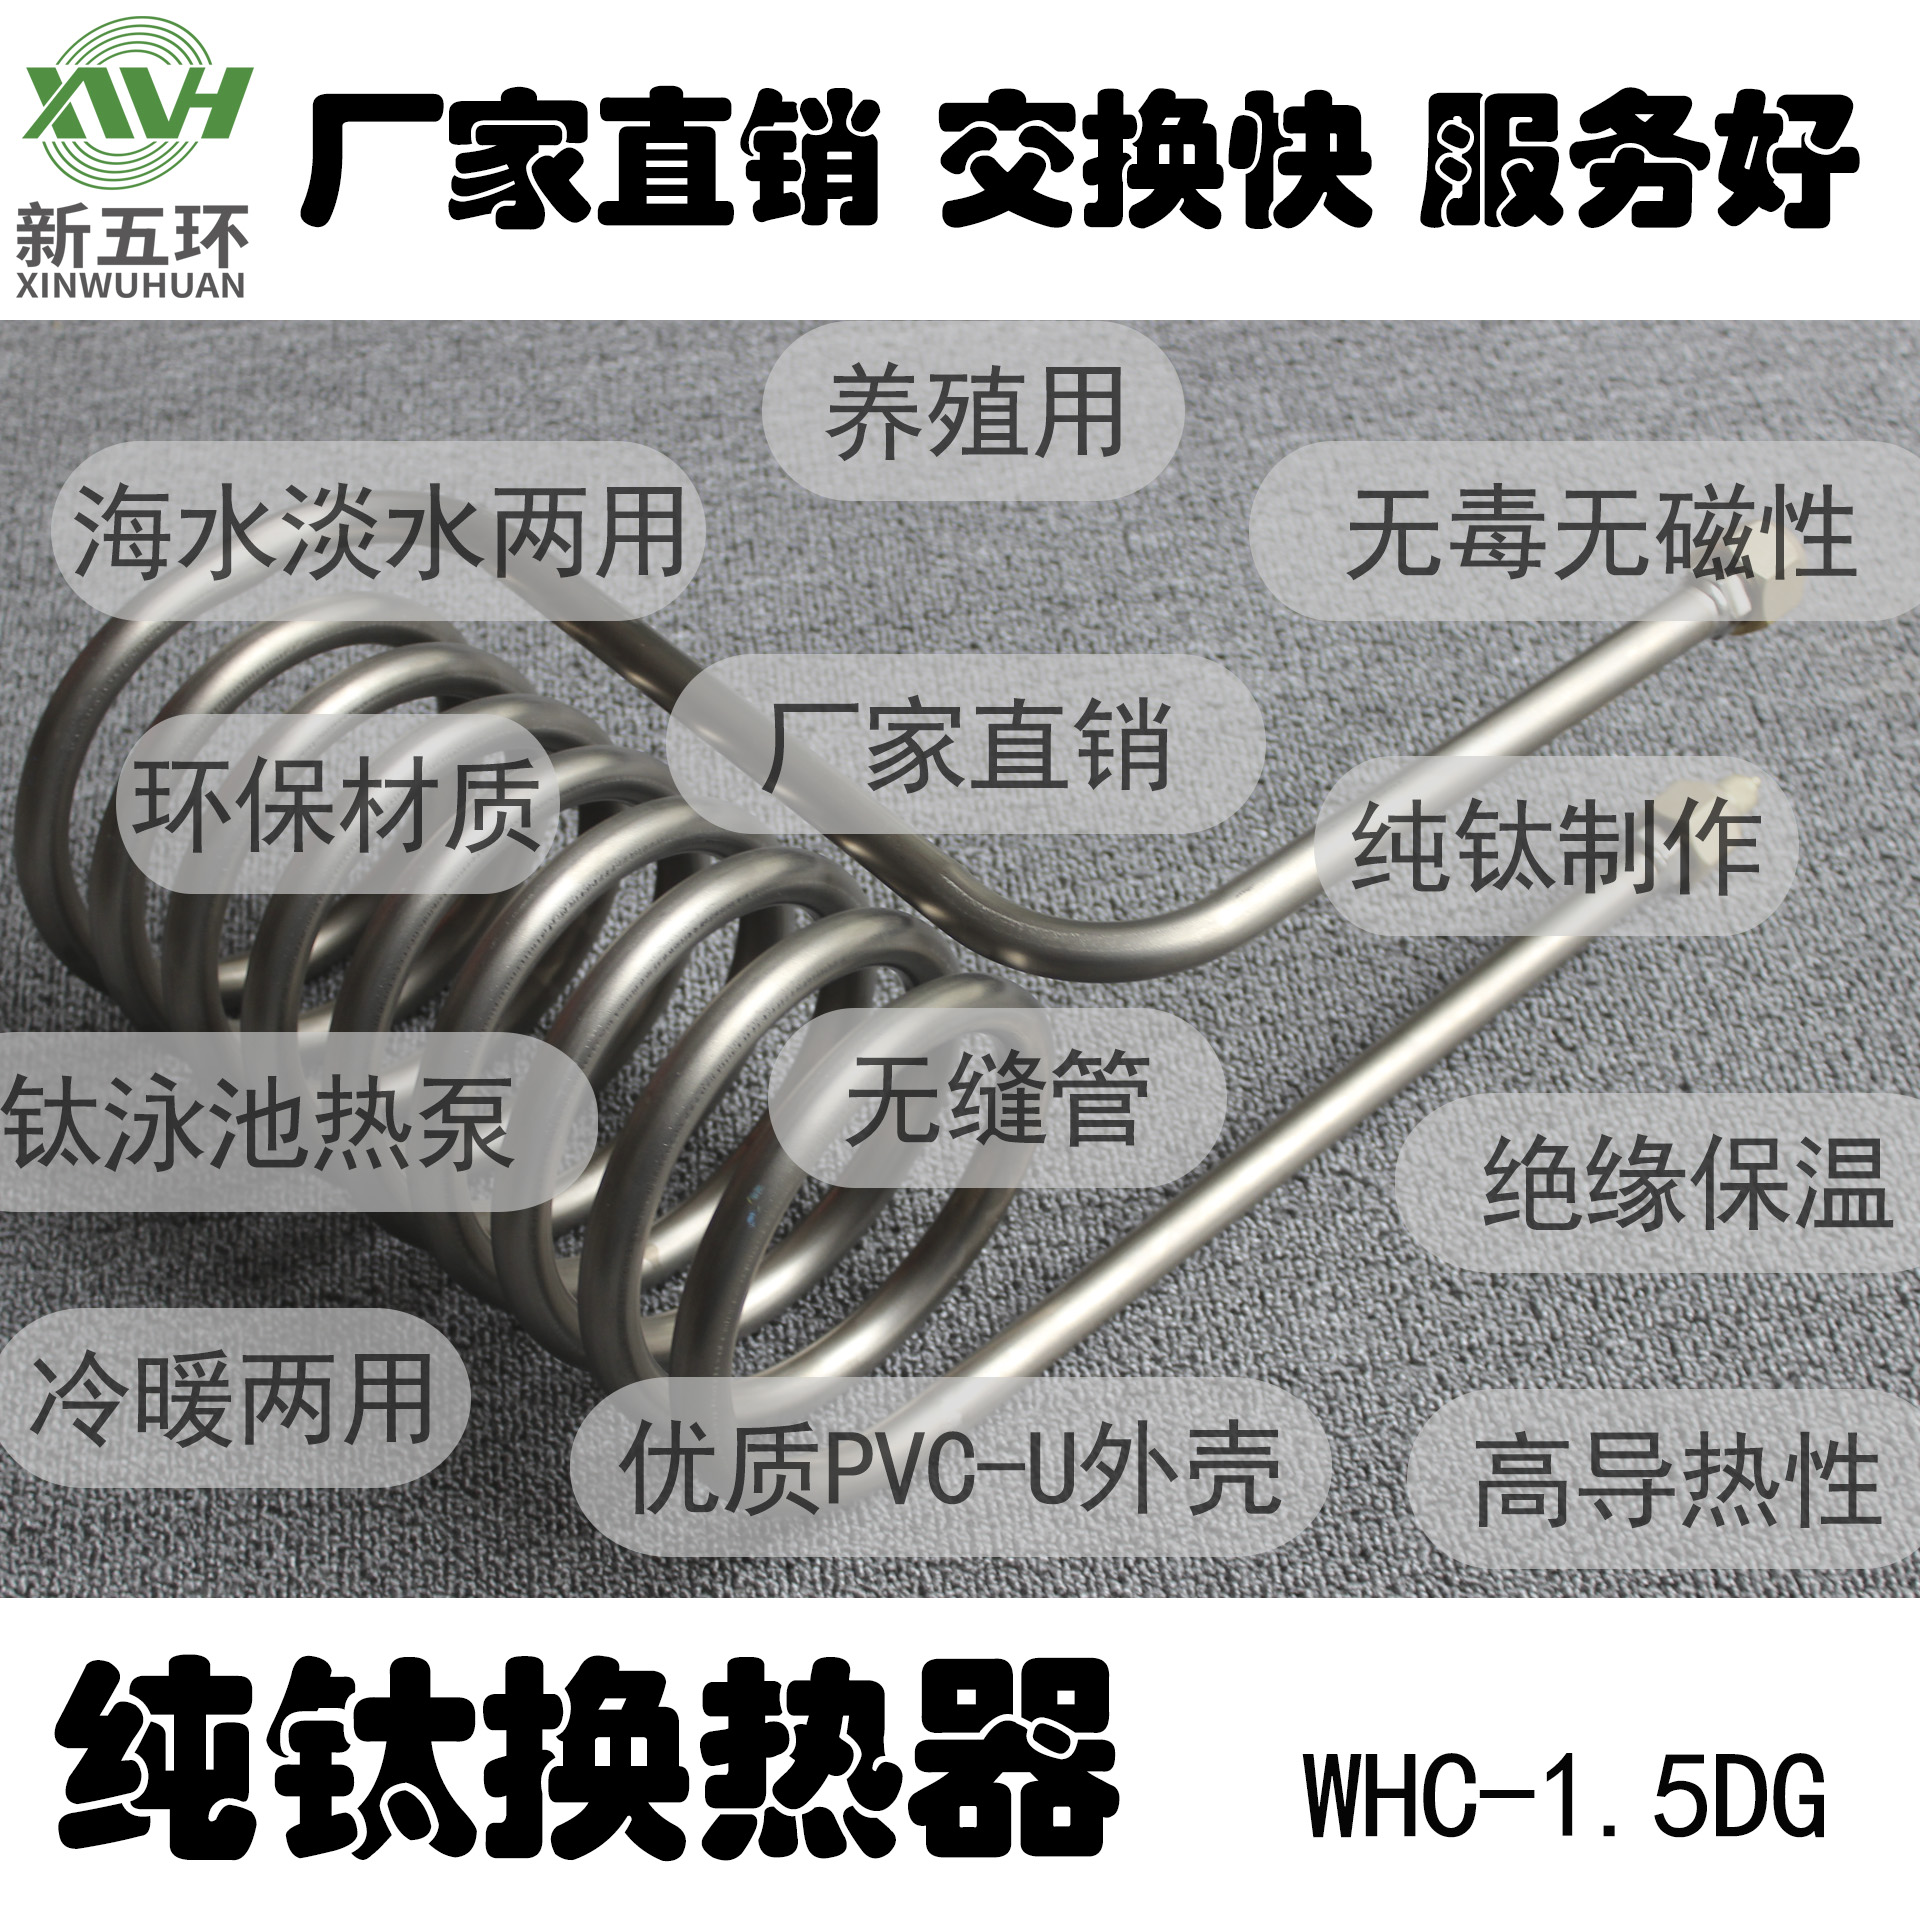 供应新五环WHC-1.5DG展览馆钛炮钛管钛桶水炮足钛制冷机组配件